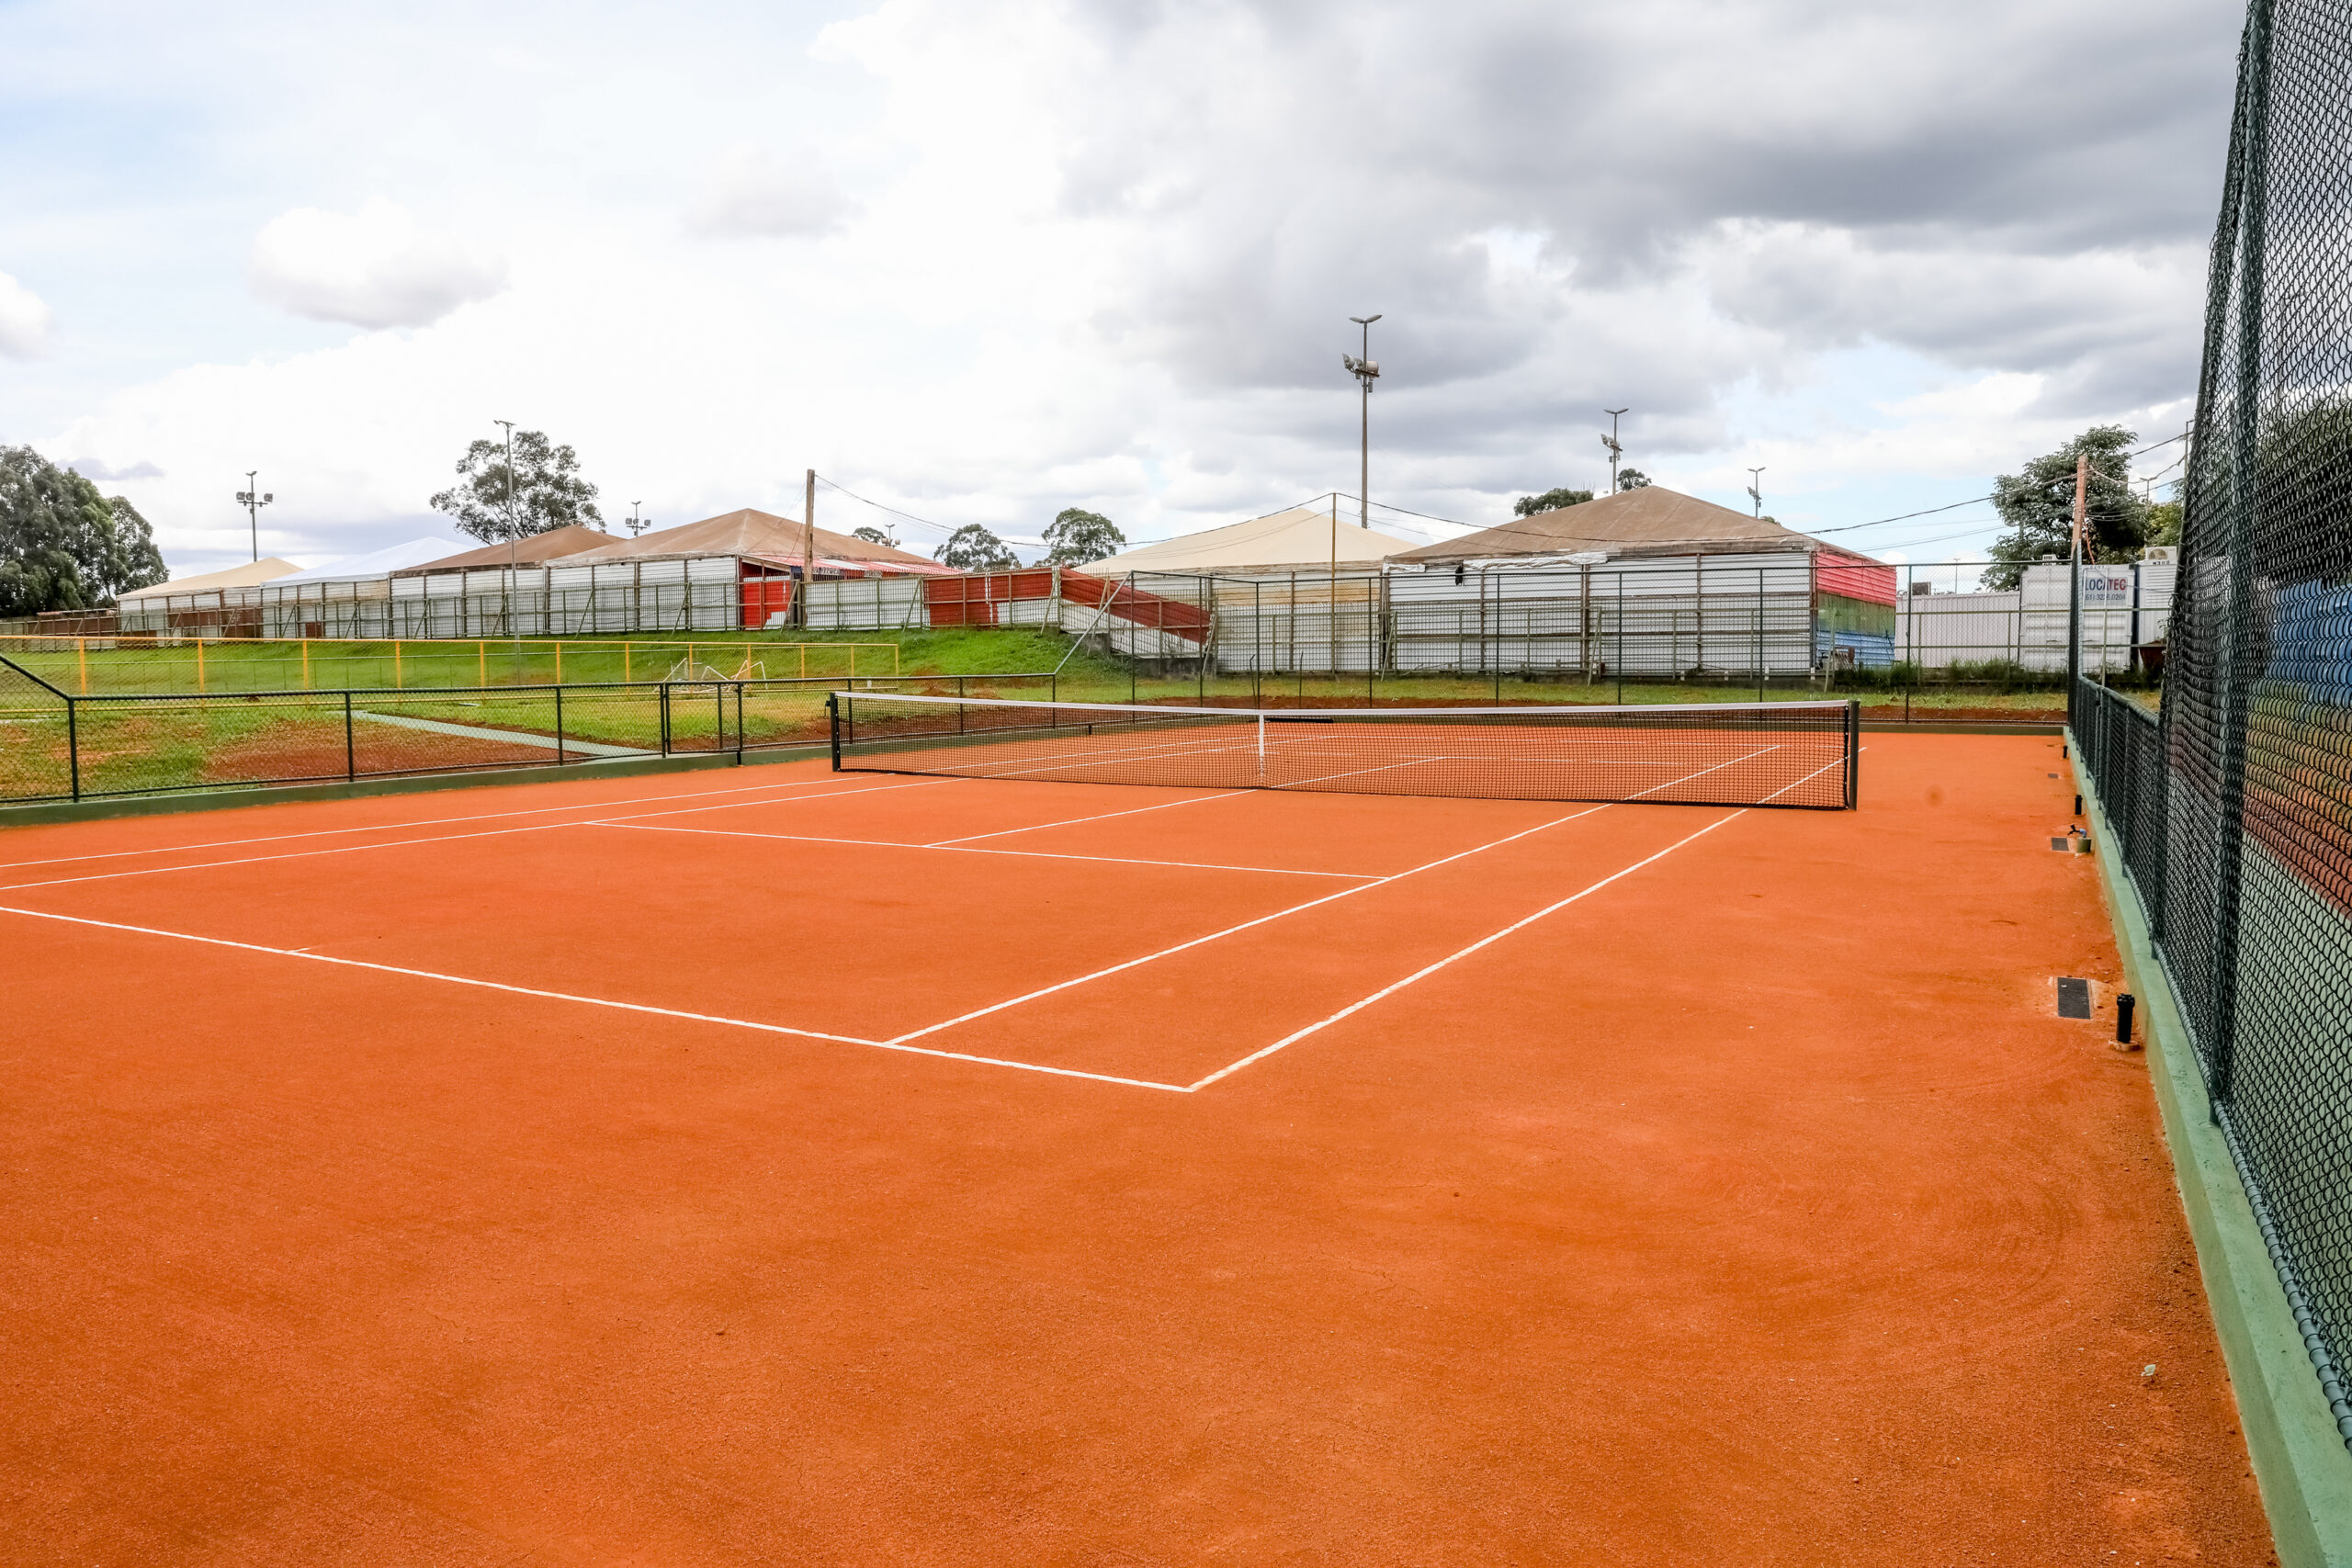 Nova quadra já tem uma lista de 30 pessoas interessadas em praticar tênis no local | Foto: Joel Rodrigues/Agência Brasília